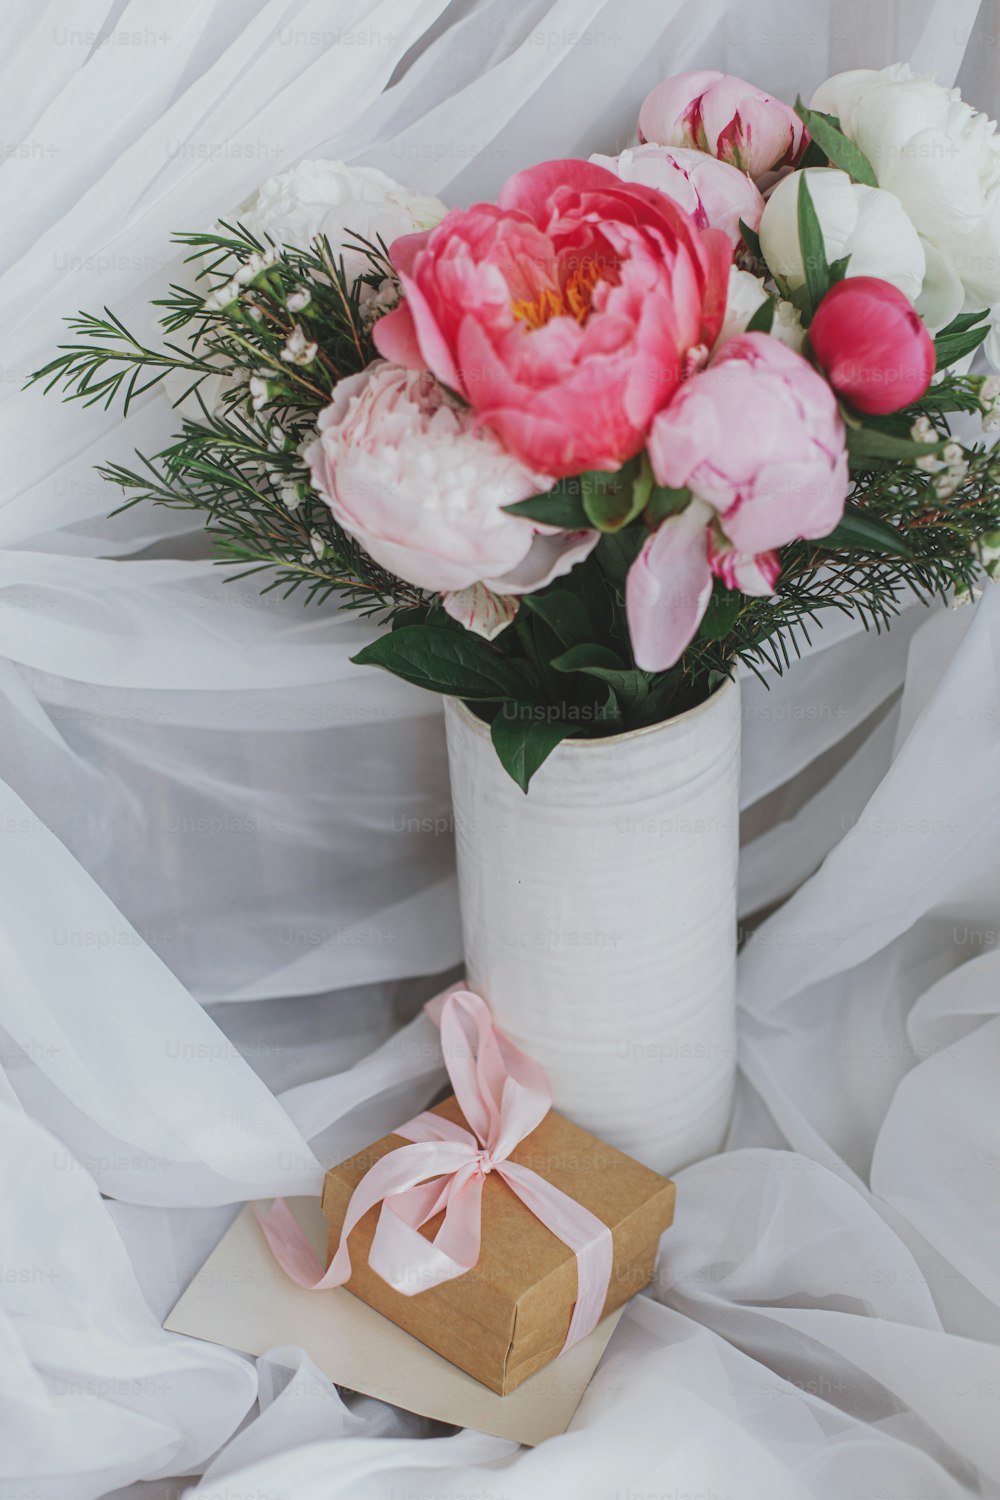 Hermoso ramo de peonías con estilo, caja de regalo y tarjeta de felicitación sobre fondo de tela blanca suave. Flores de peonía rosas y blancas en jarrón de cerámica. Feliz día de la madre. Mañana nupcial